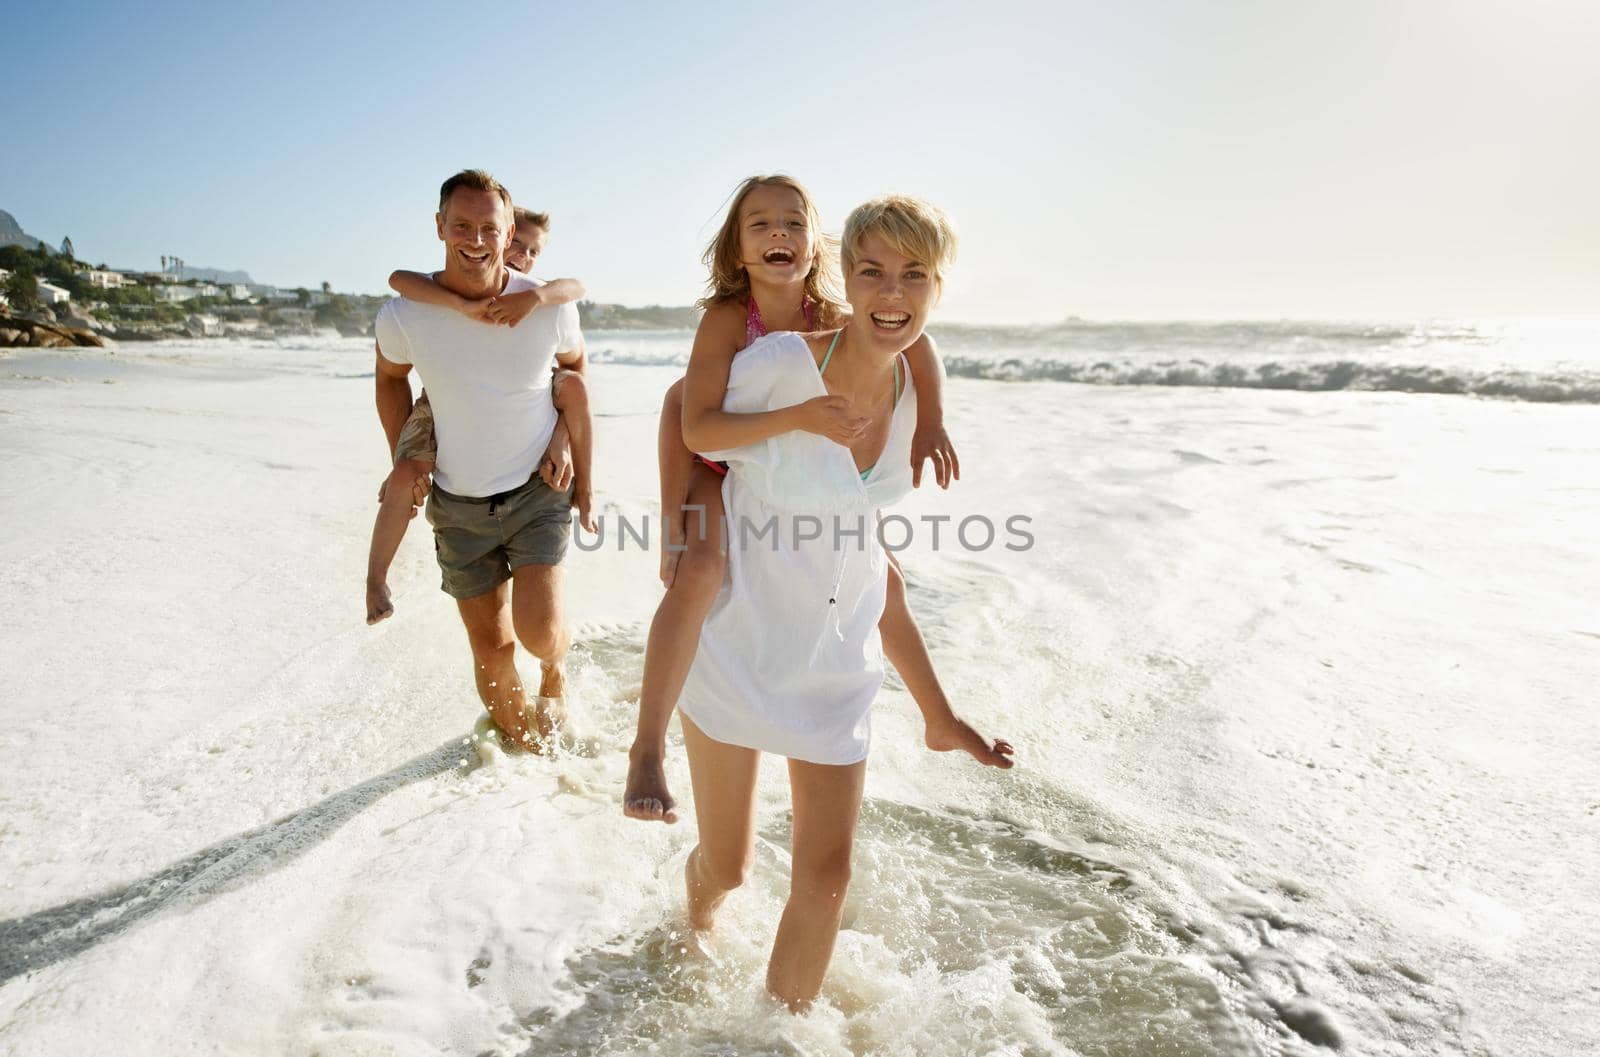 A family having fun at the beach.